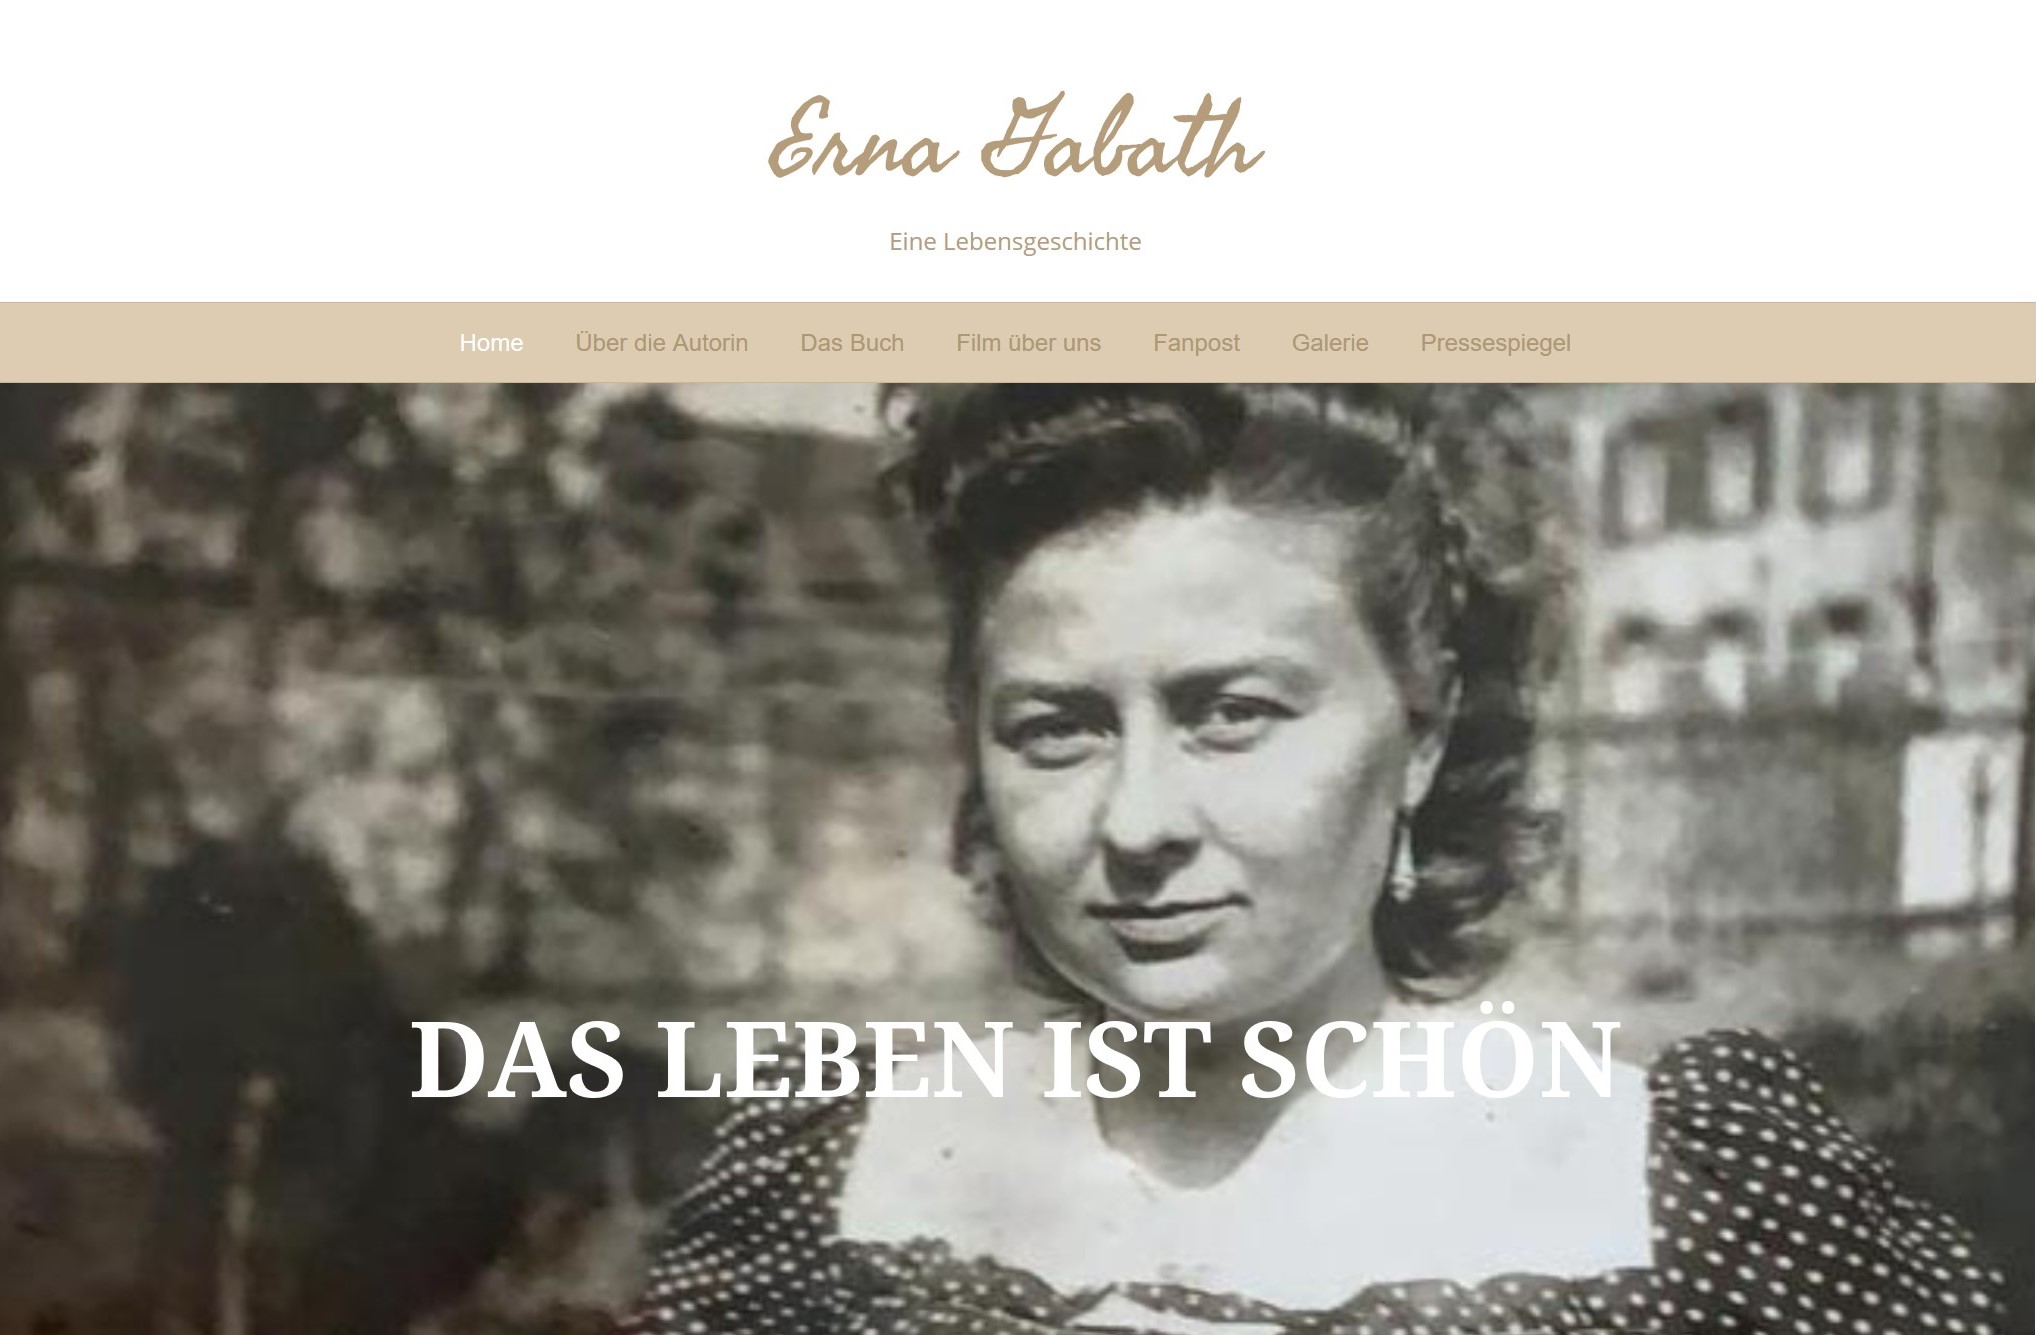 Frauenliteratur das Leben der Erna Gabath